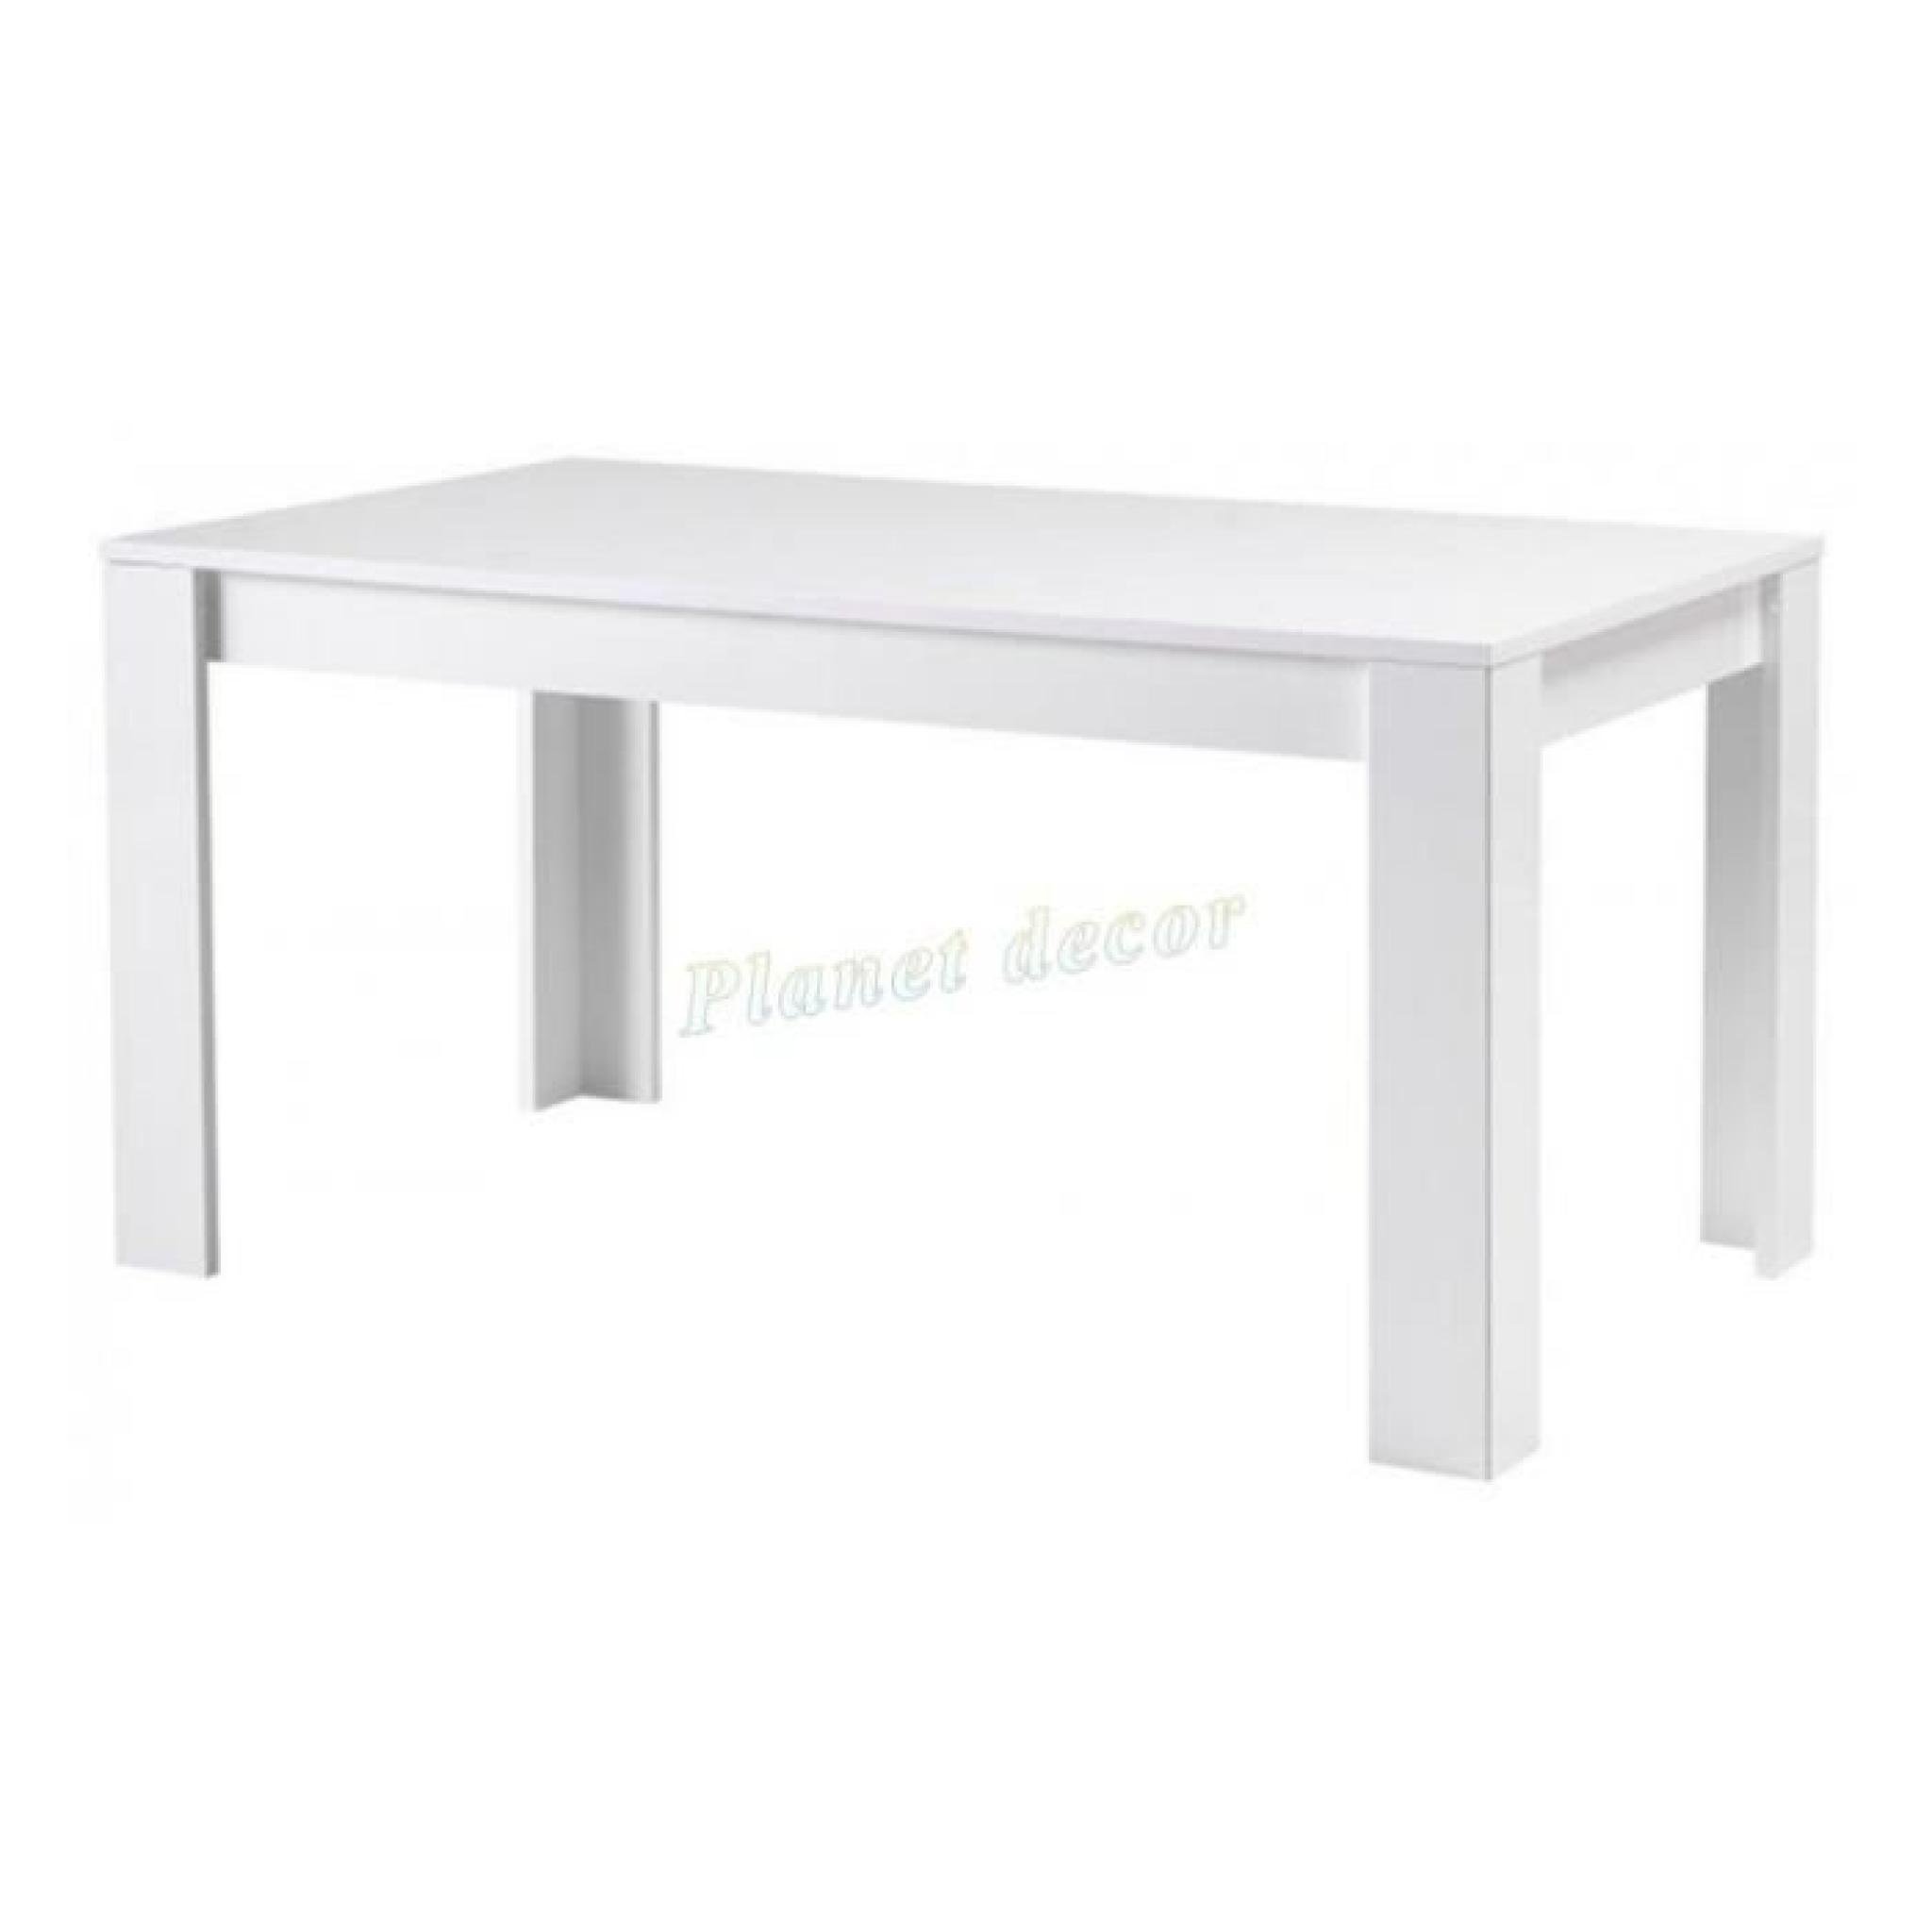 TABLE DE REPAS MODENA LAQUEE BLANC L160cm(sans chaises)